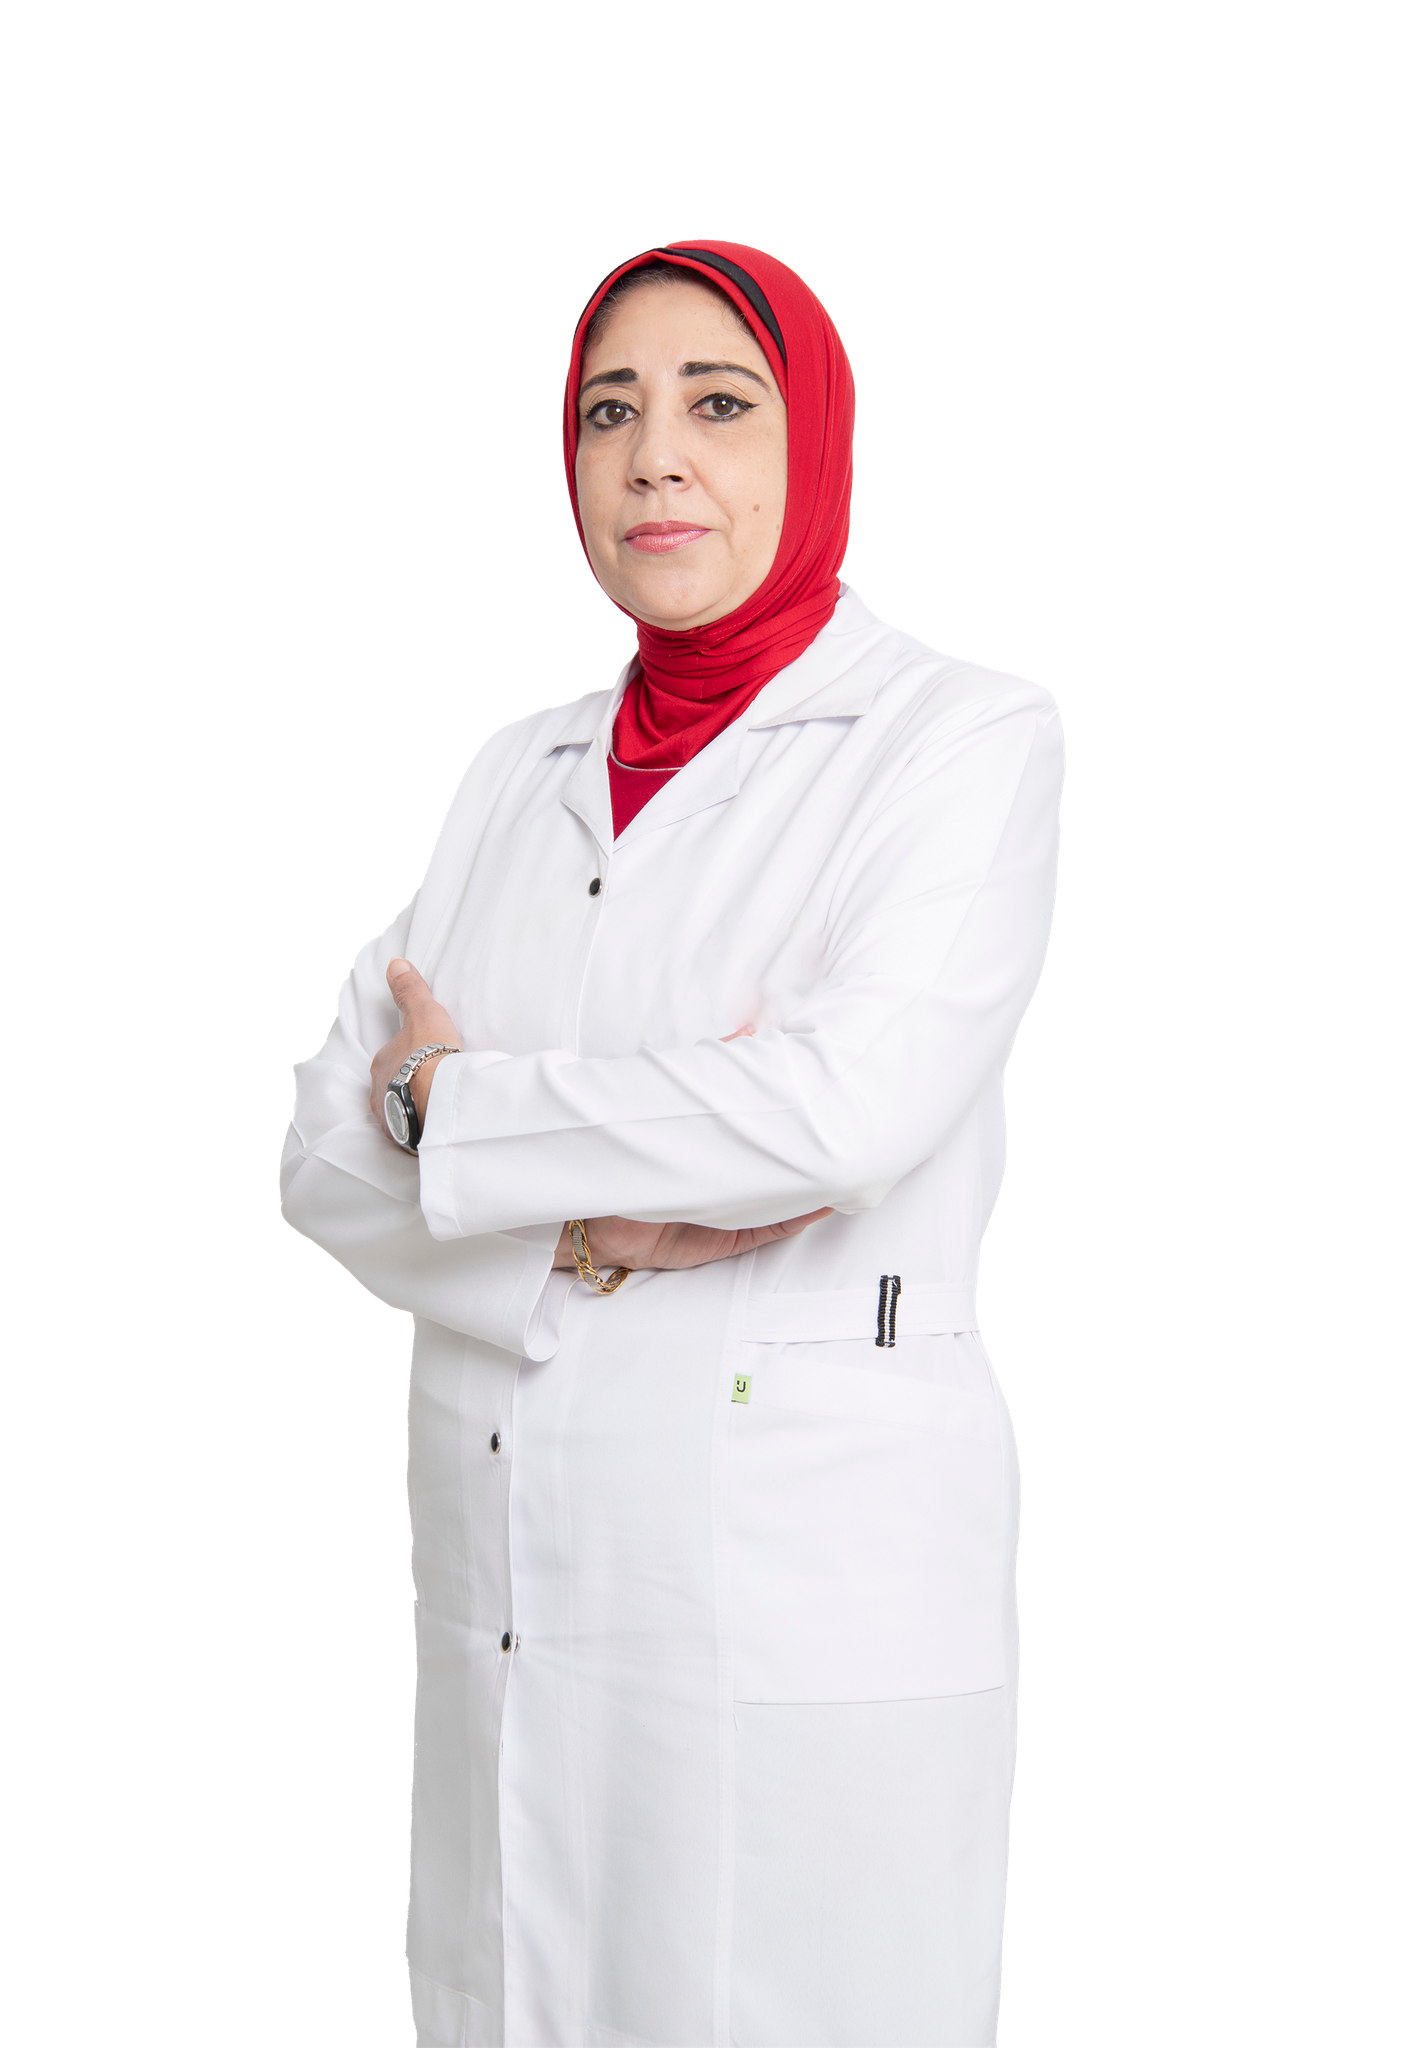 Dr. Sahar Shehata